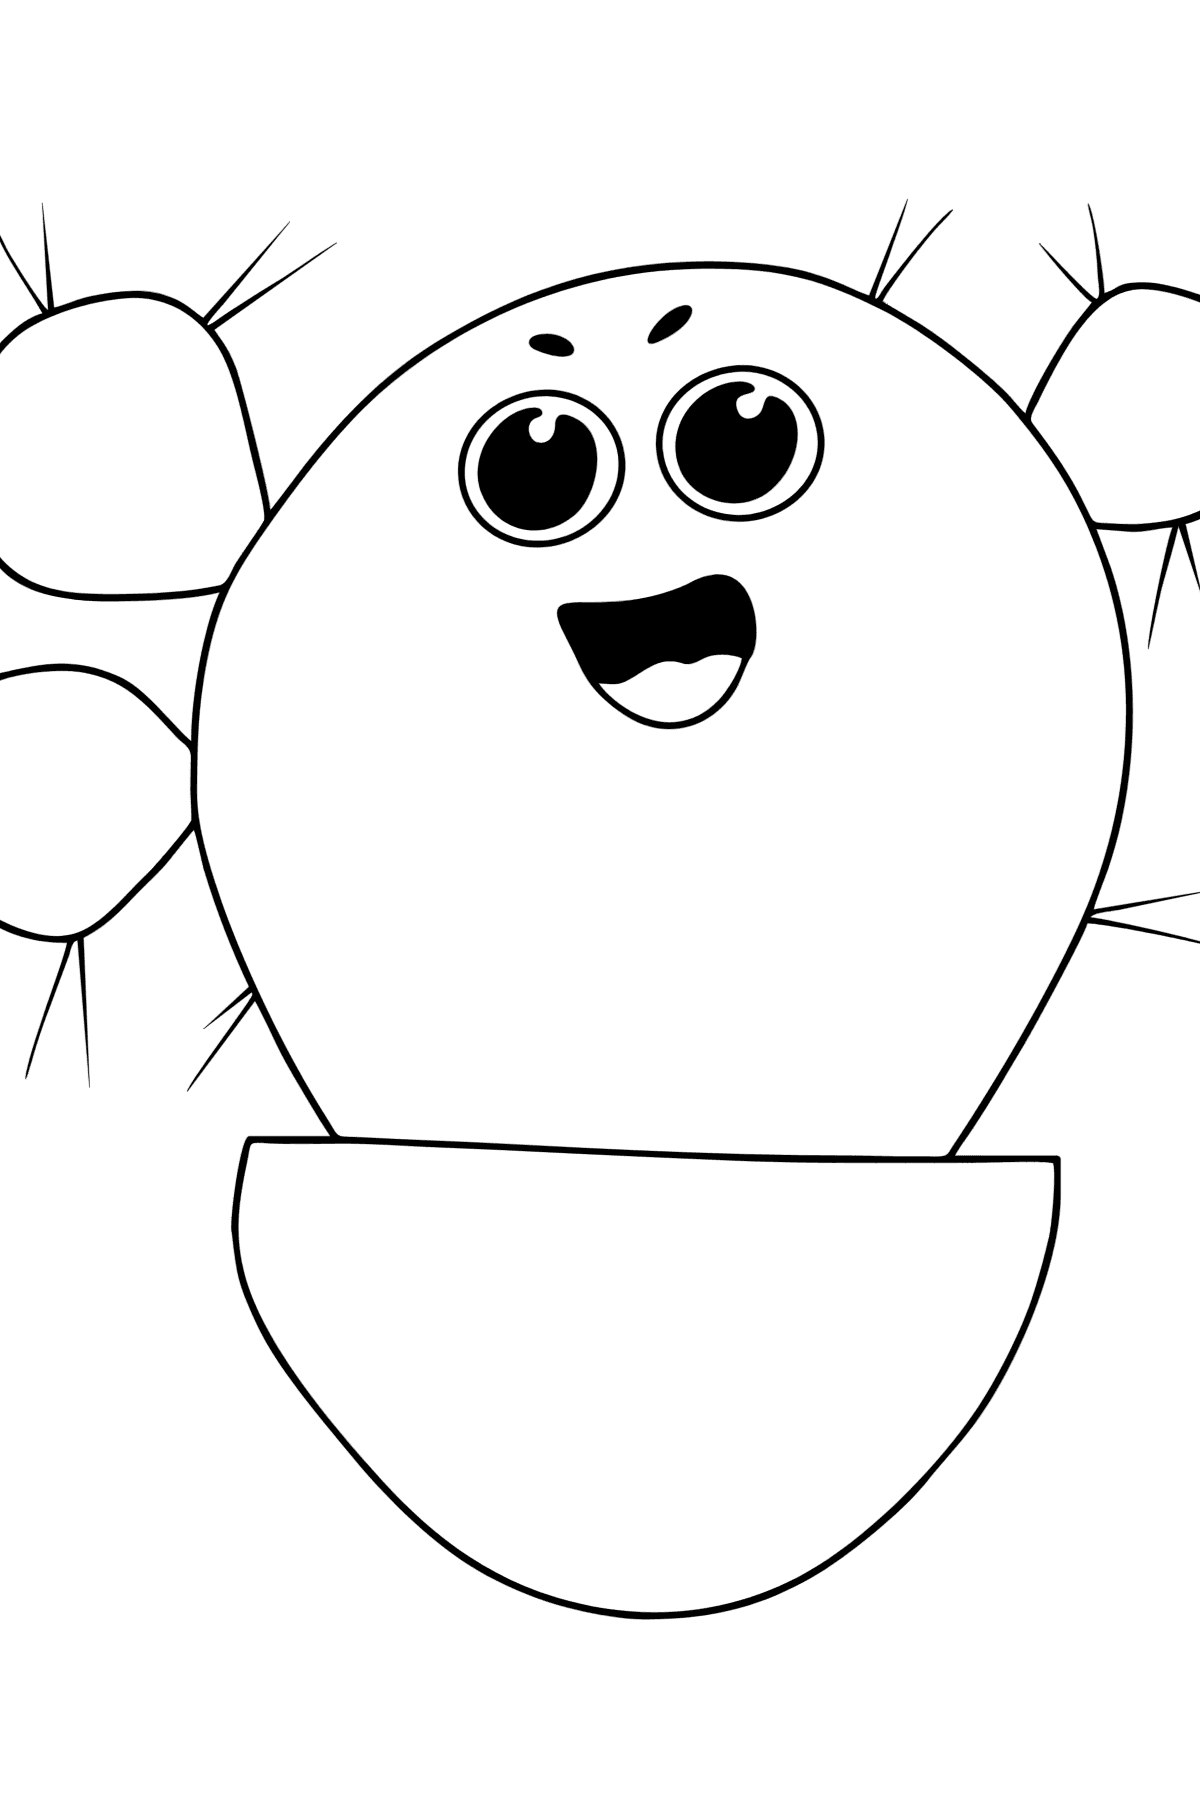 Раскраска кактус Опунция с глазками - Картинки для Детей